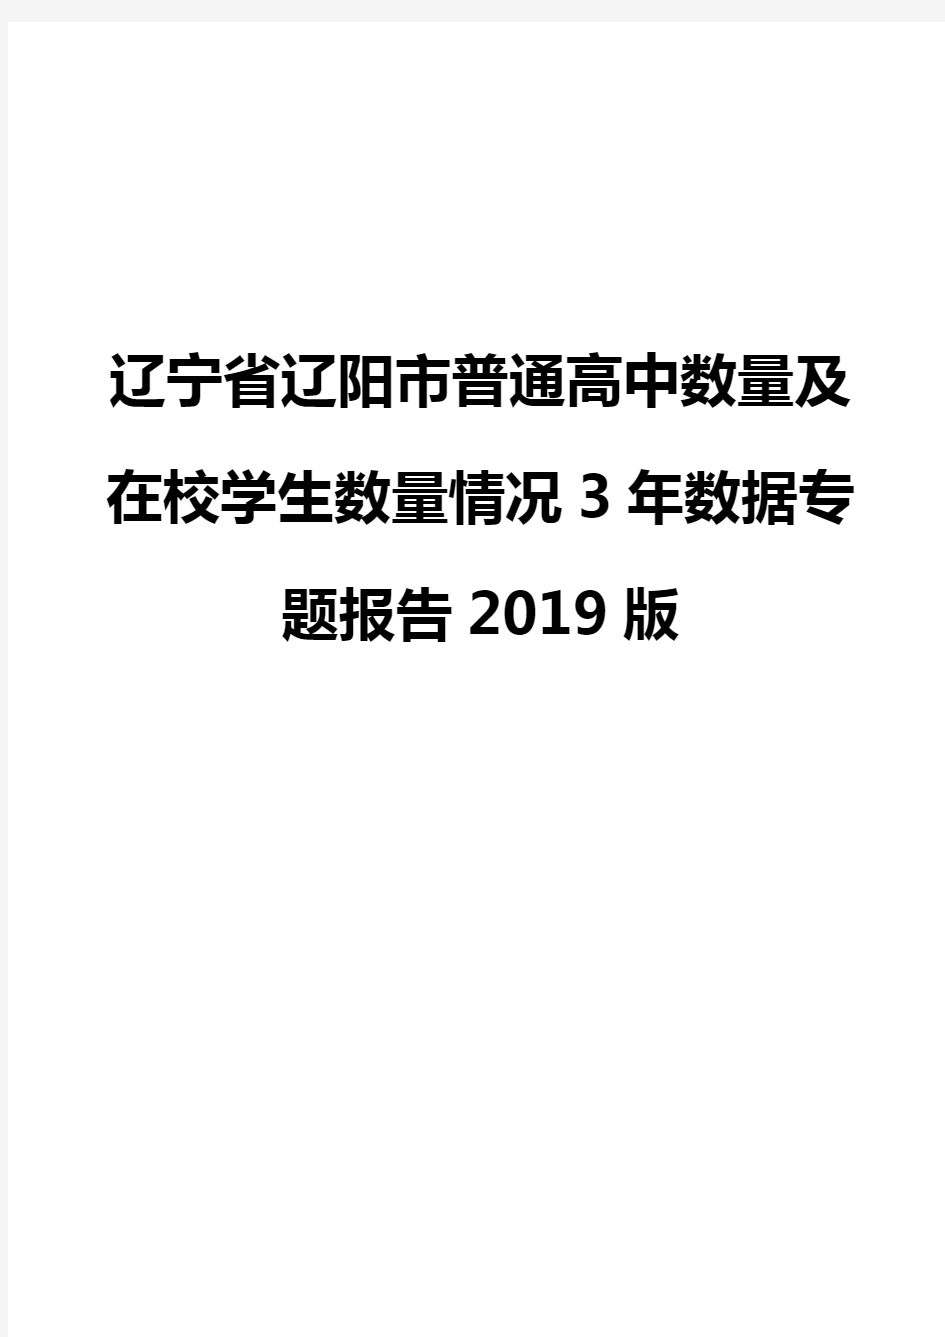 辽宁省辽阳市普通高中数量及在校学生数量情况3年数据专题报告2019版